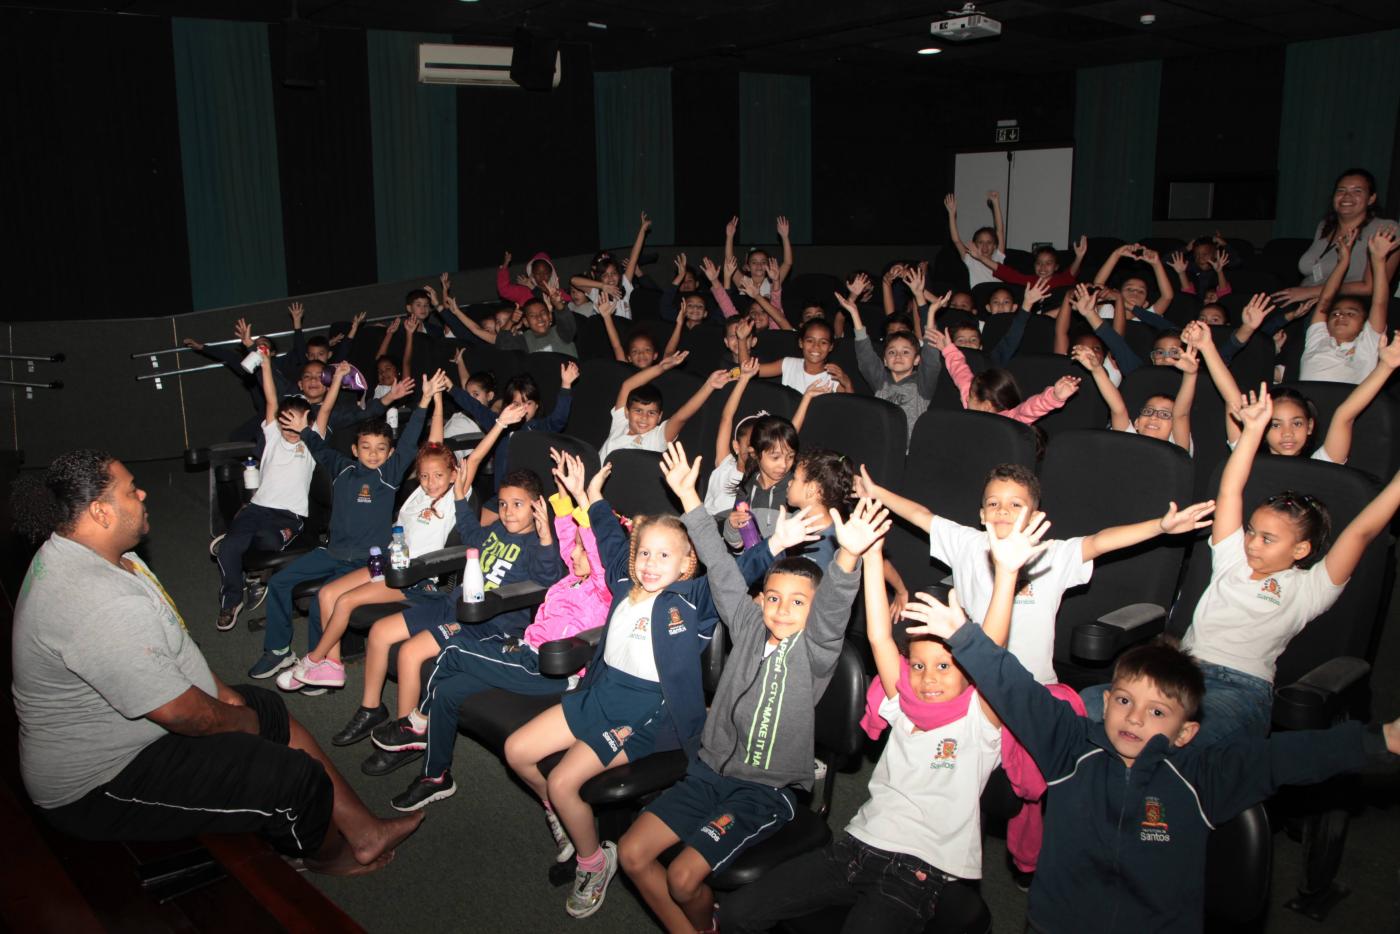 crianças estão em sala de cinema felizes, todas com os braços para o alto. #paratodosverem 